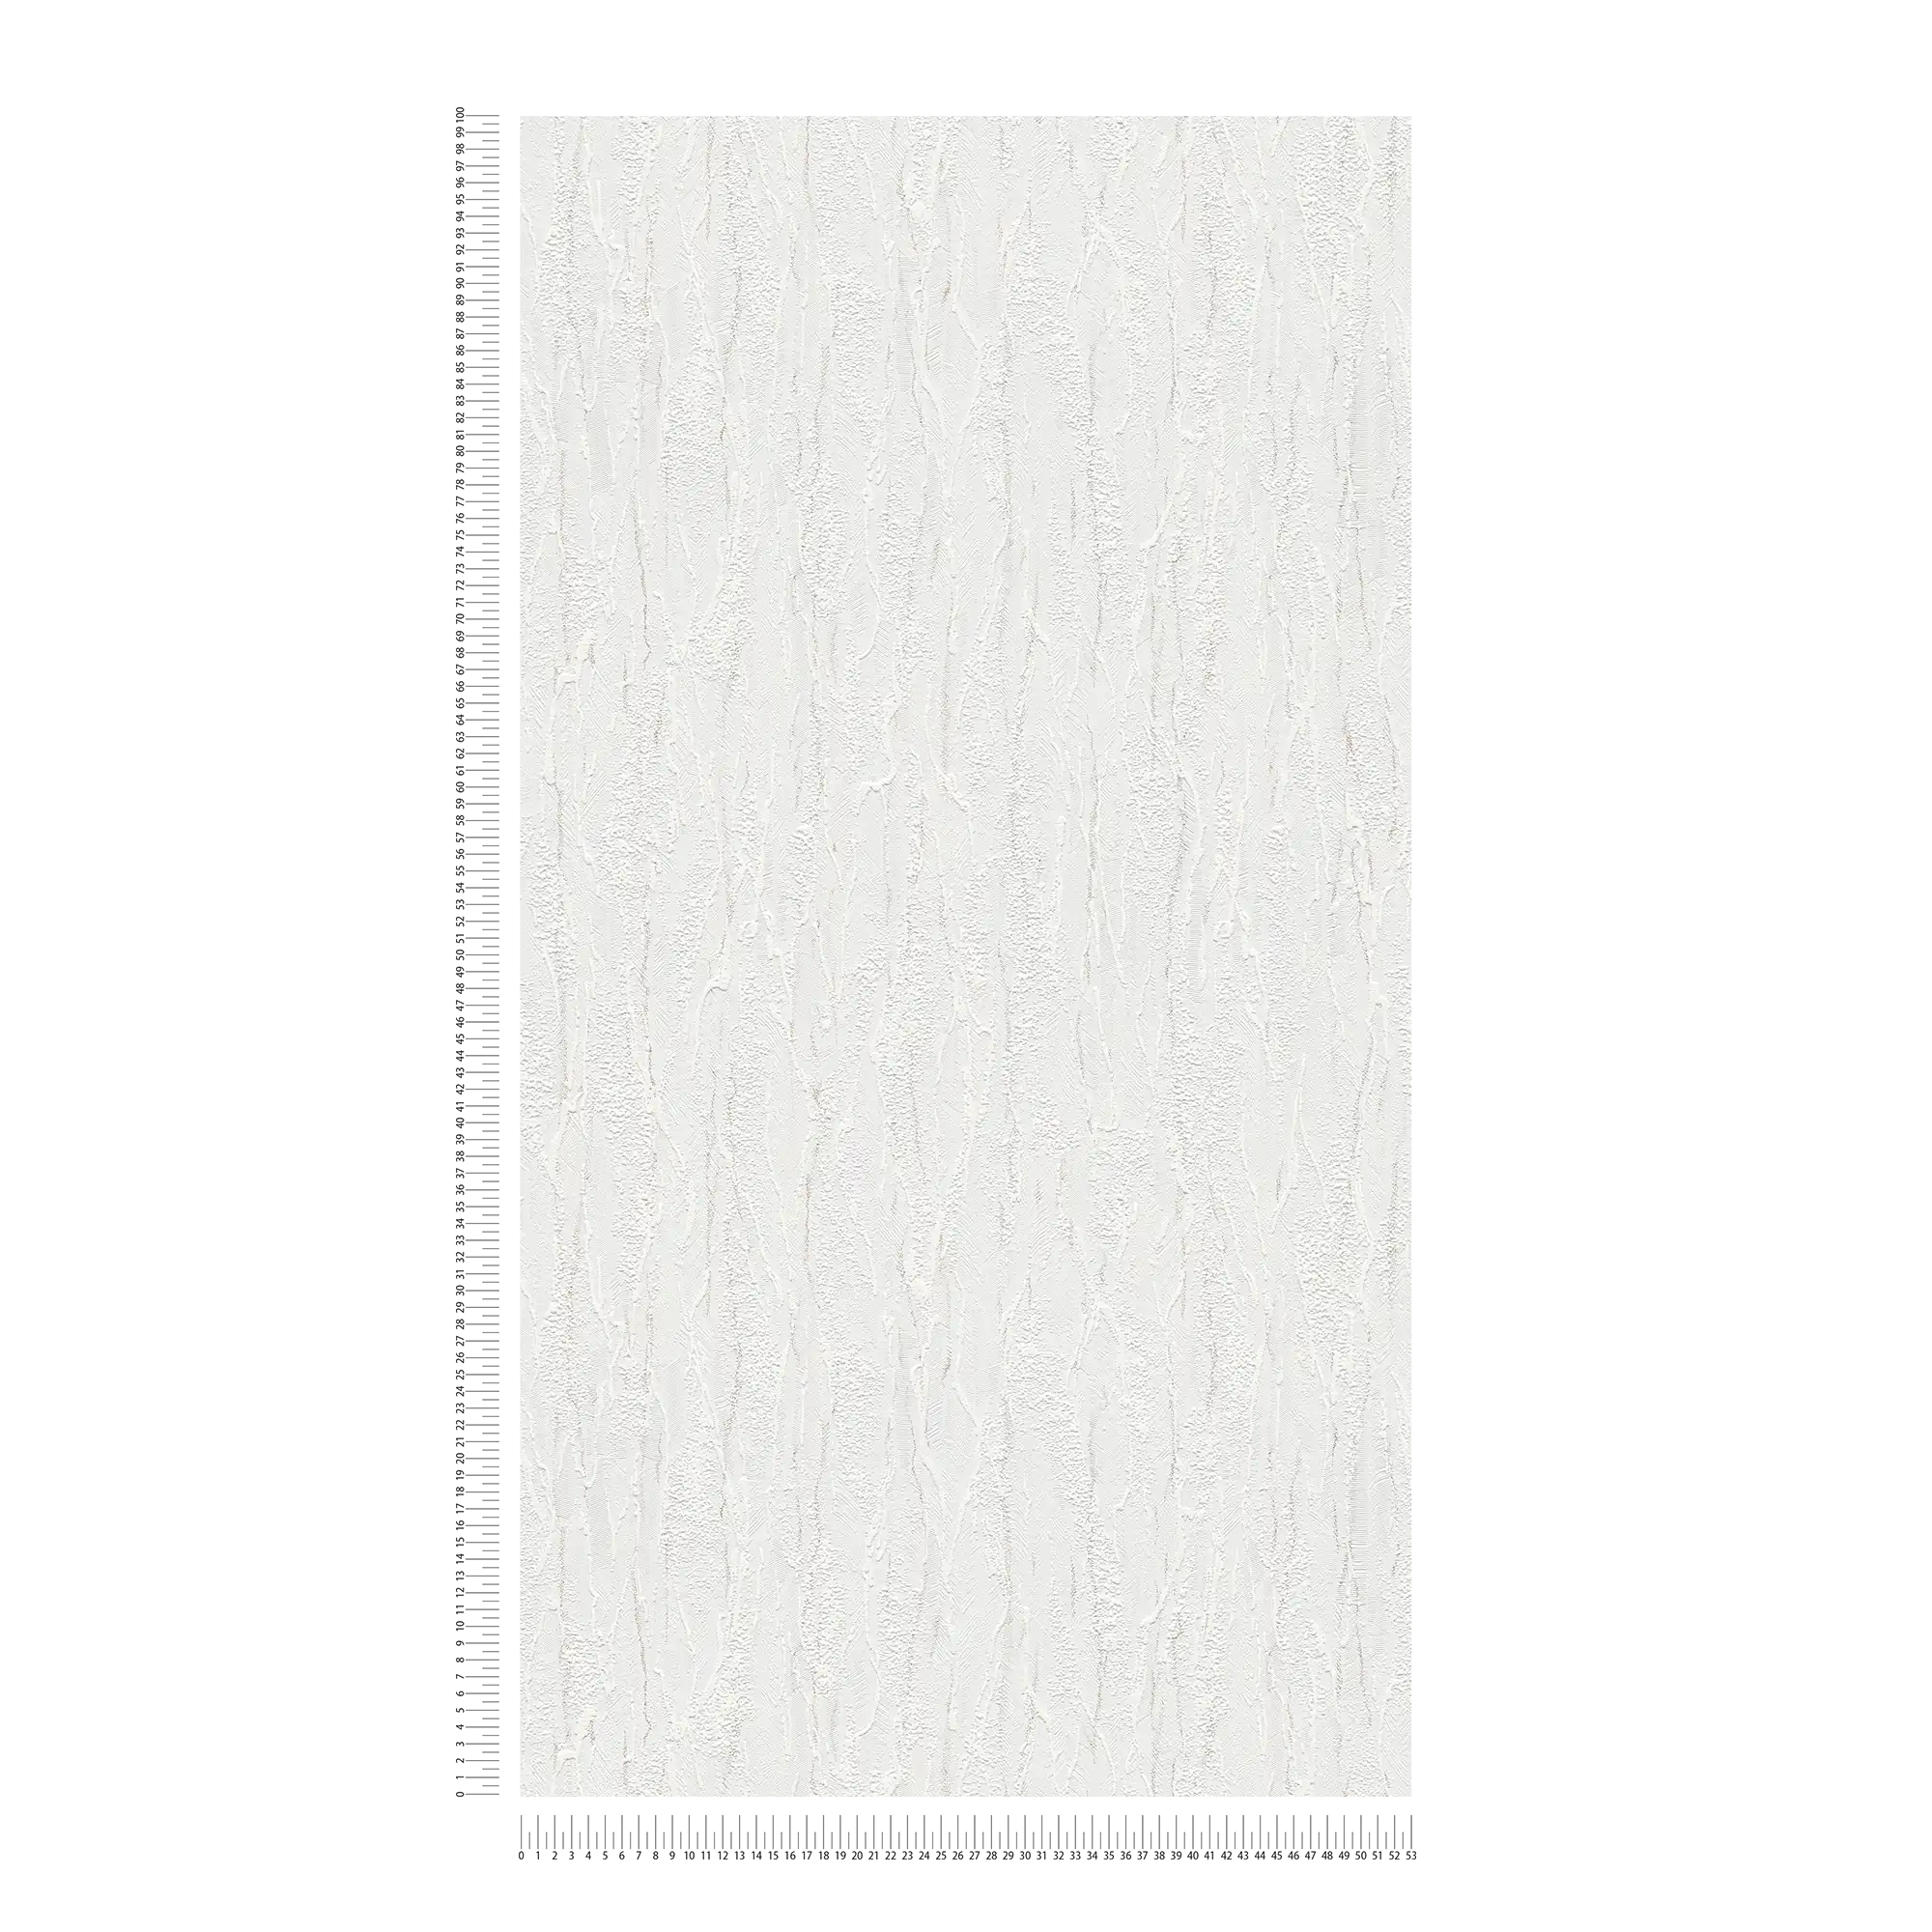             Onderlaag behang wit structuurpatroon, grijze accenten - Wit
        